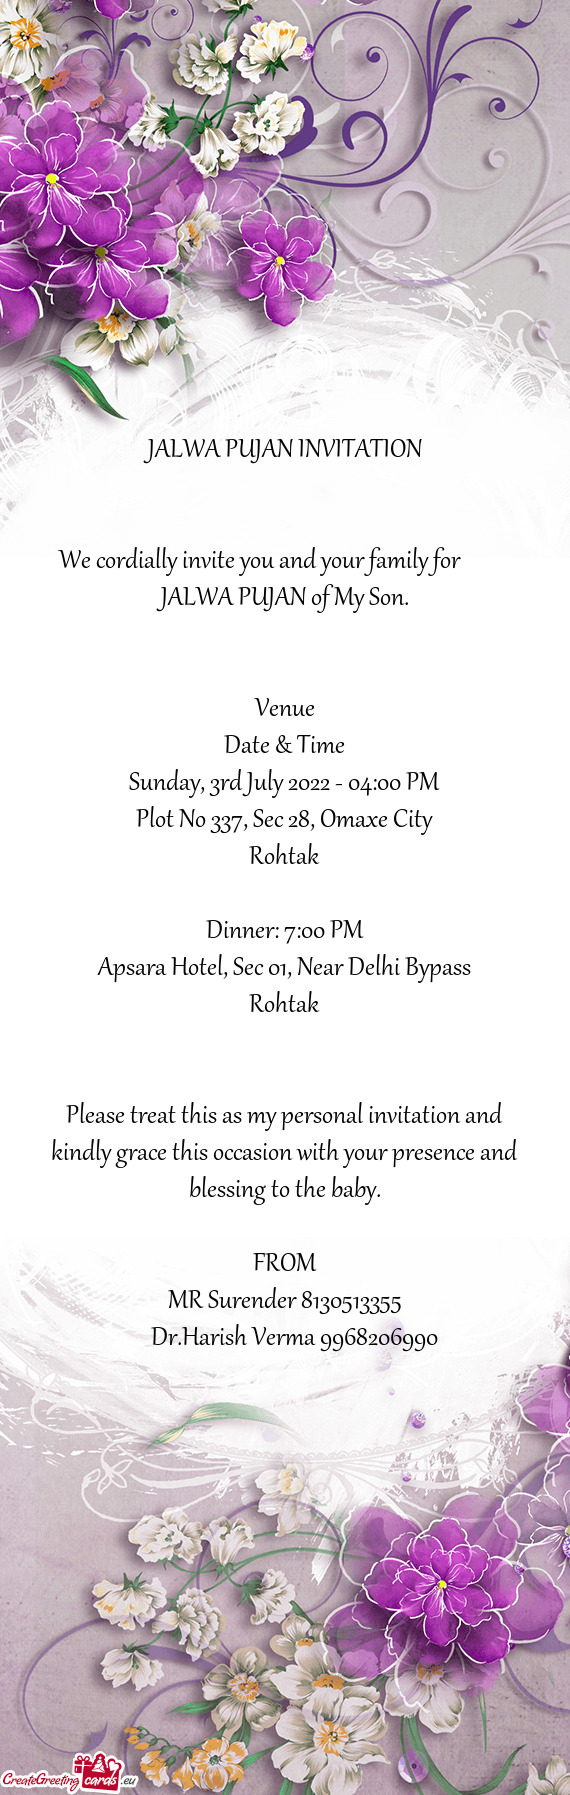 Apsara Hotel, Sec 01, Near Delhi Bypass